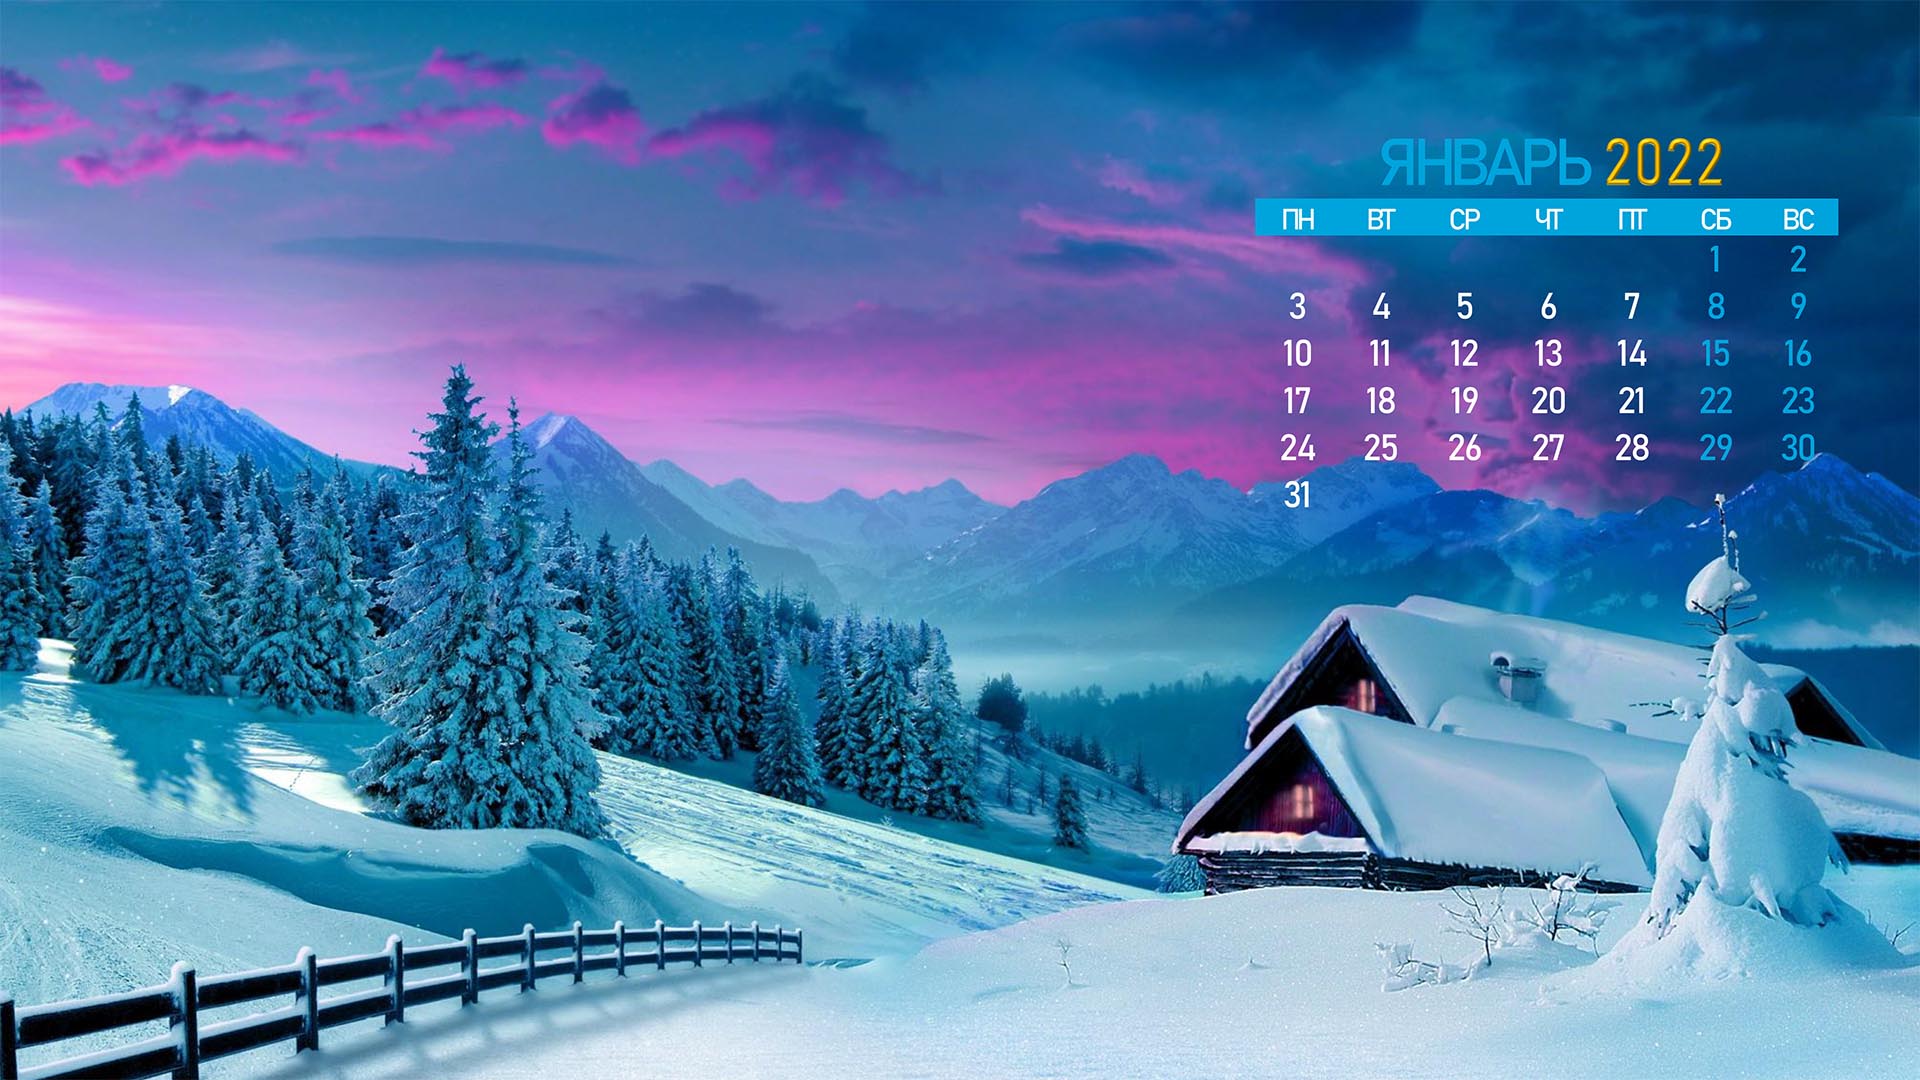 Бесплатное фото Календарь на январь 2022